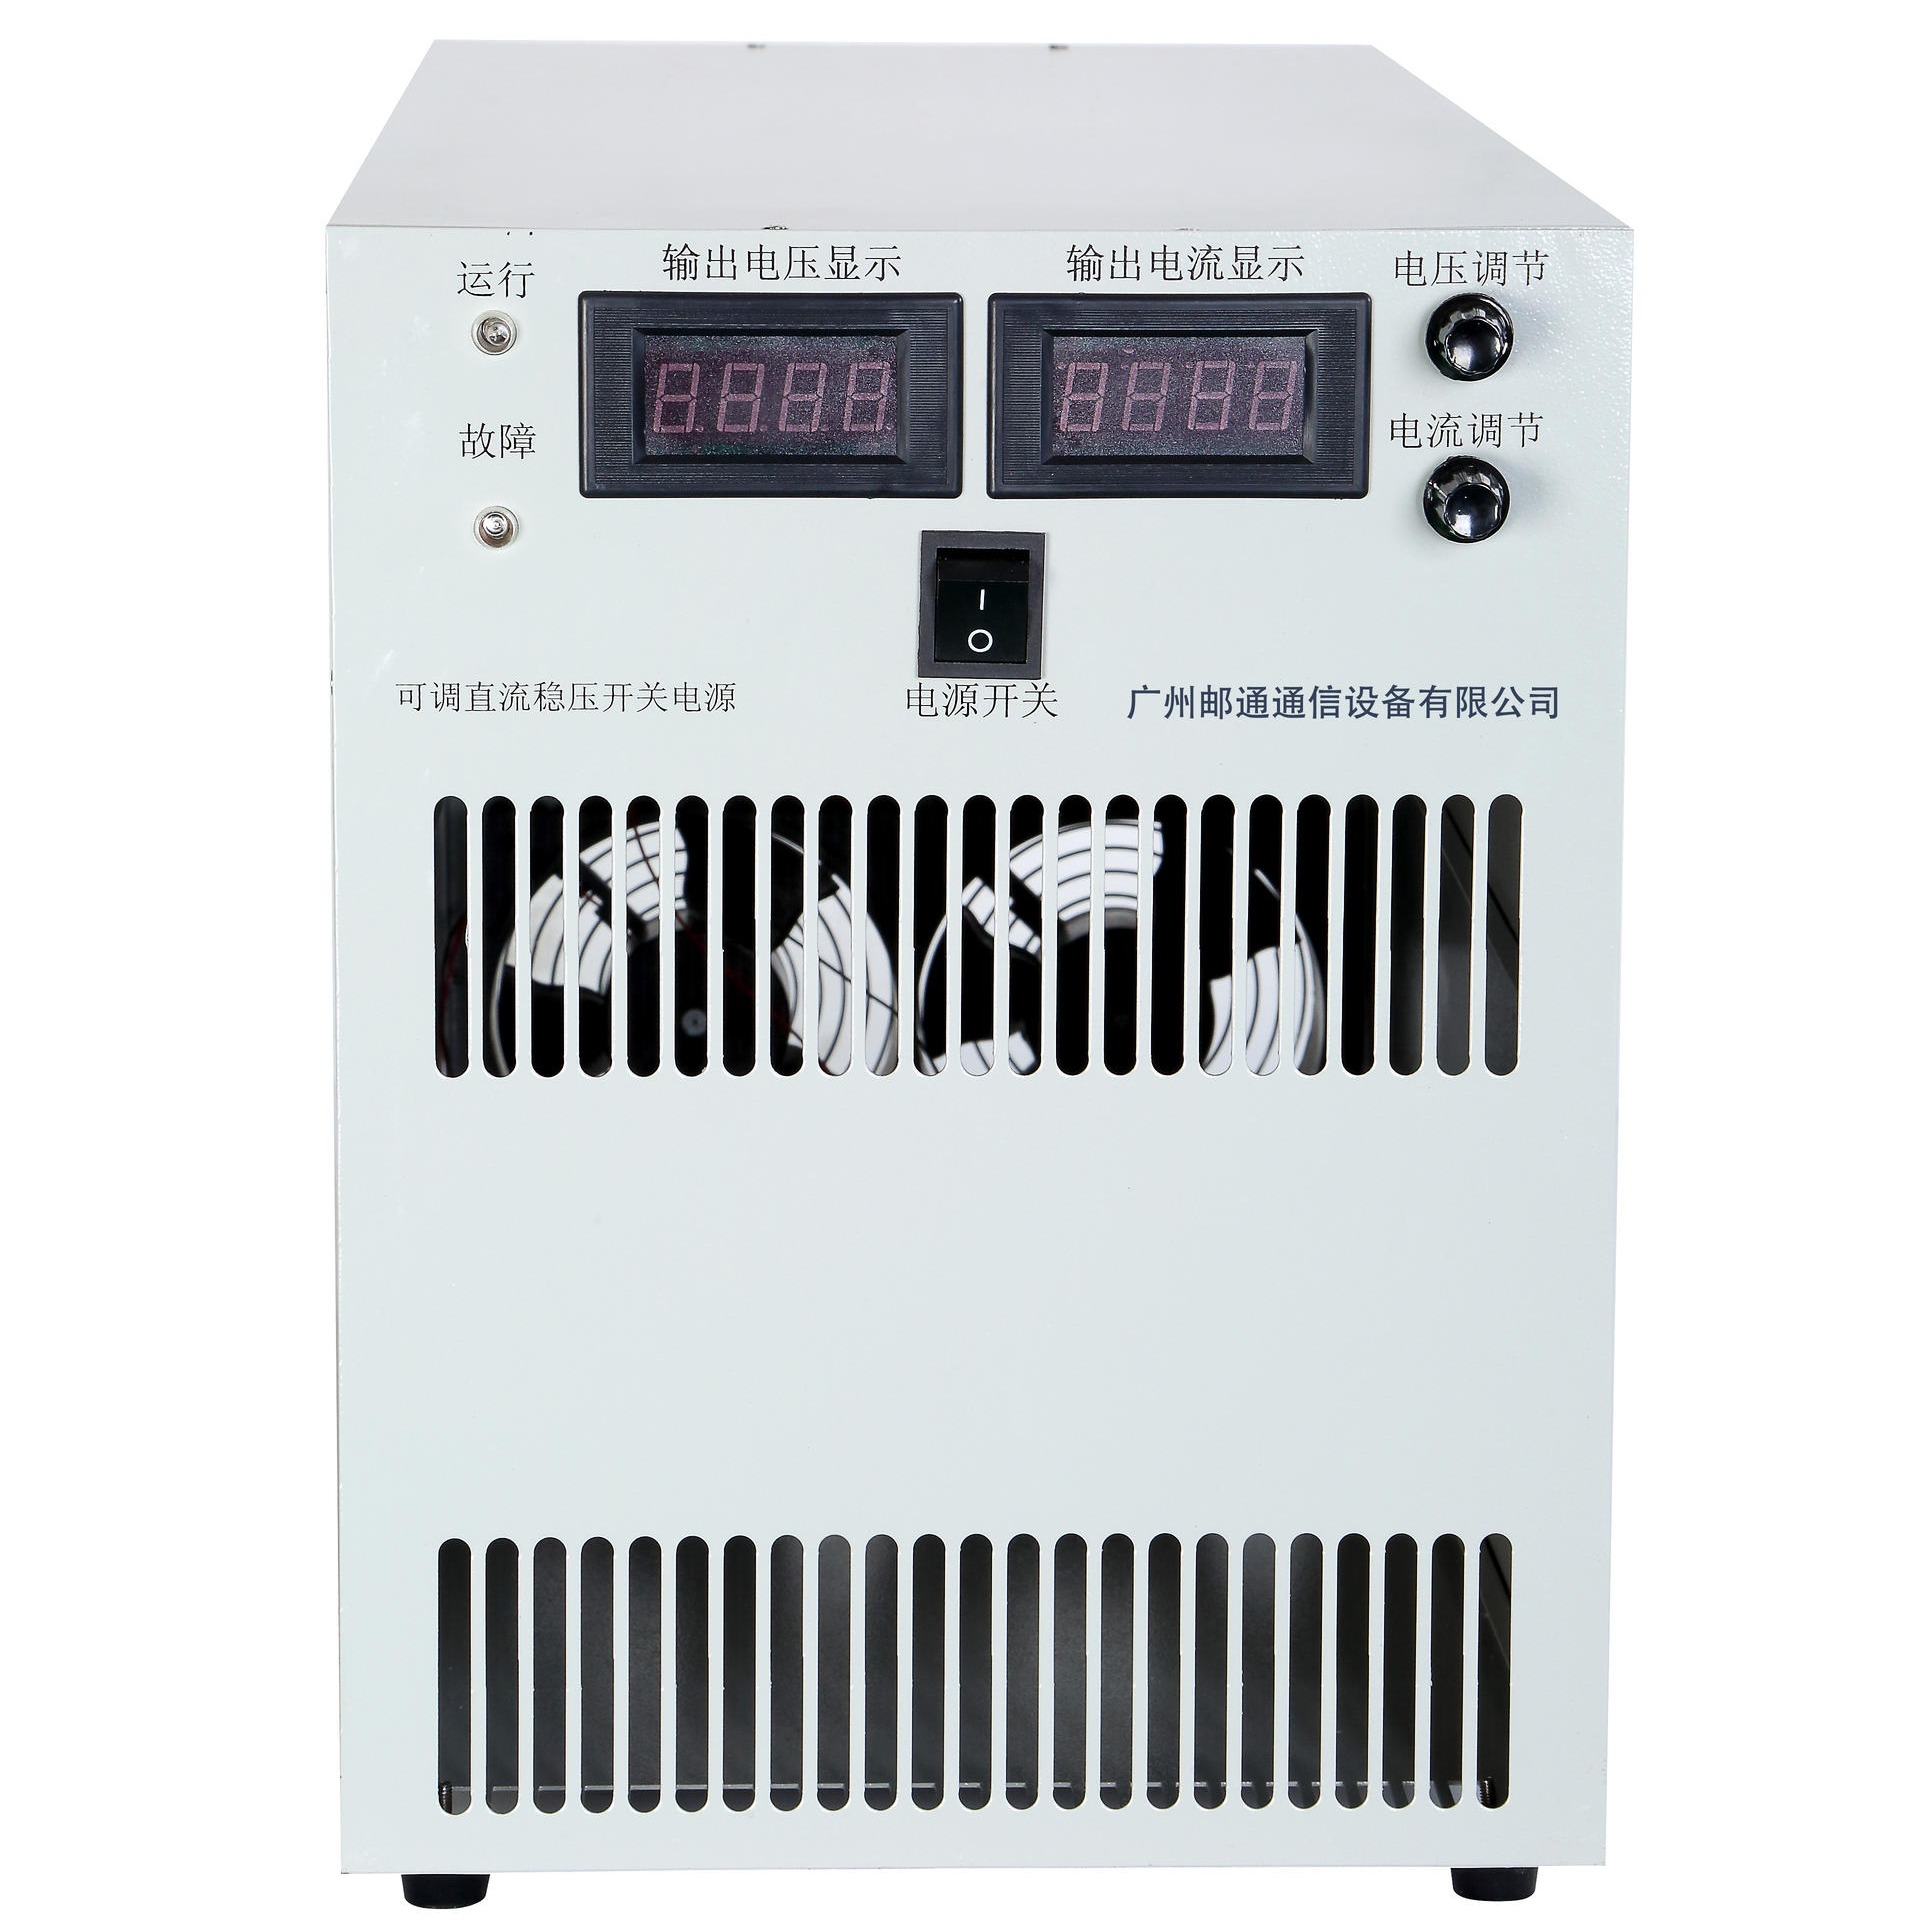 广州邮通YT-AD11036系列可调直流稳压恒流电源